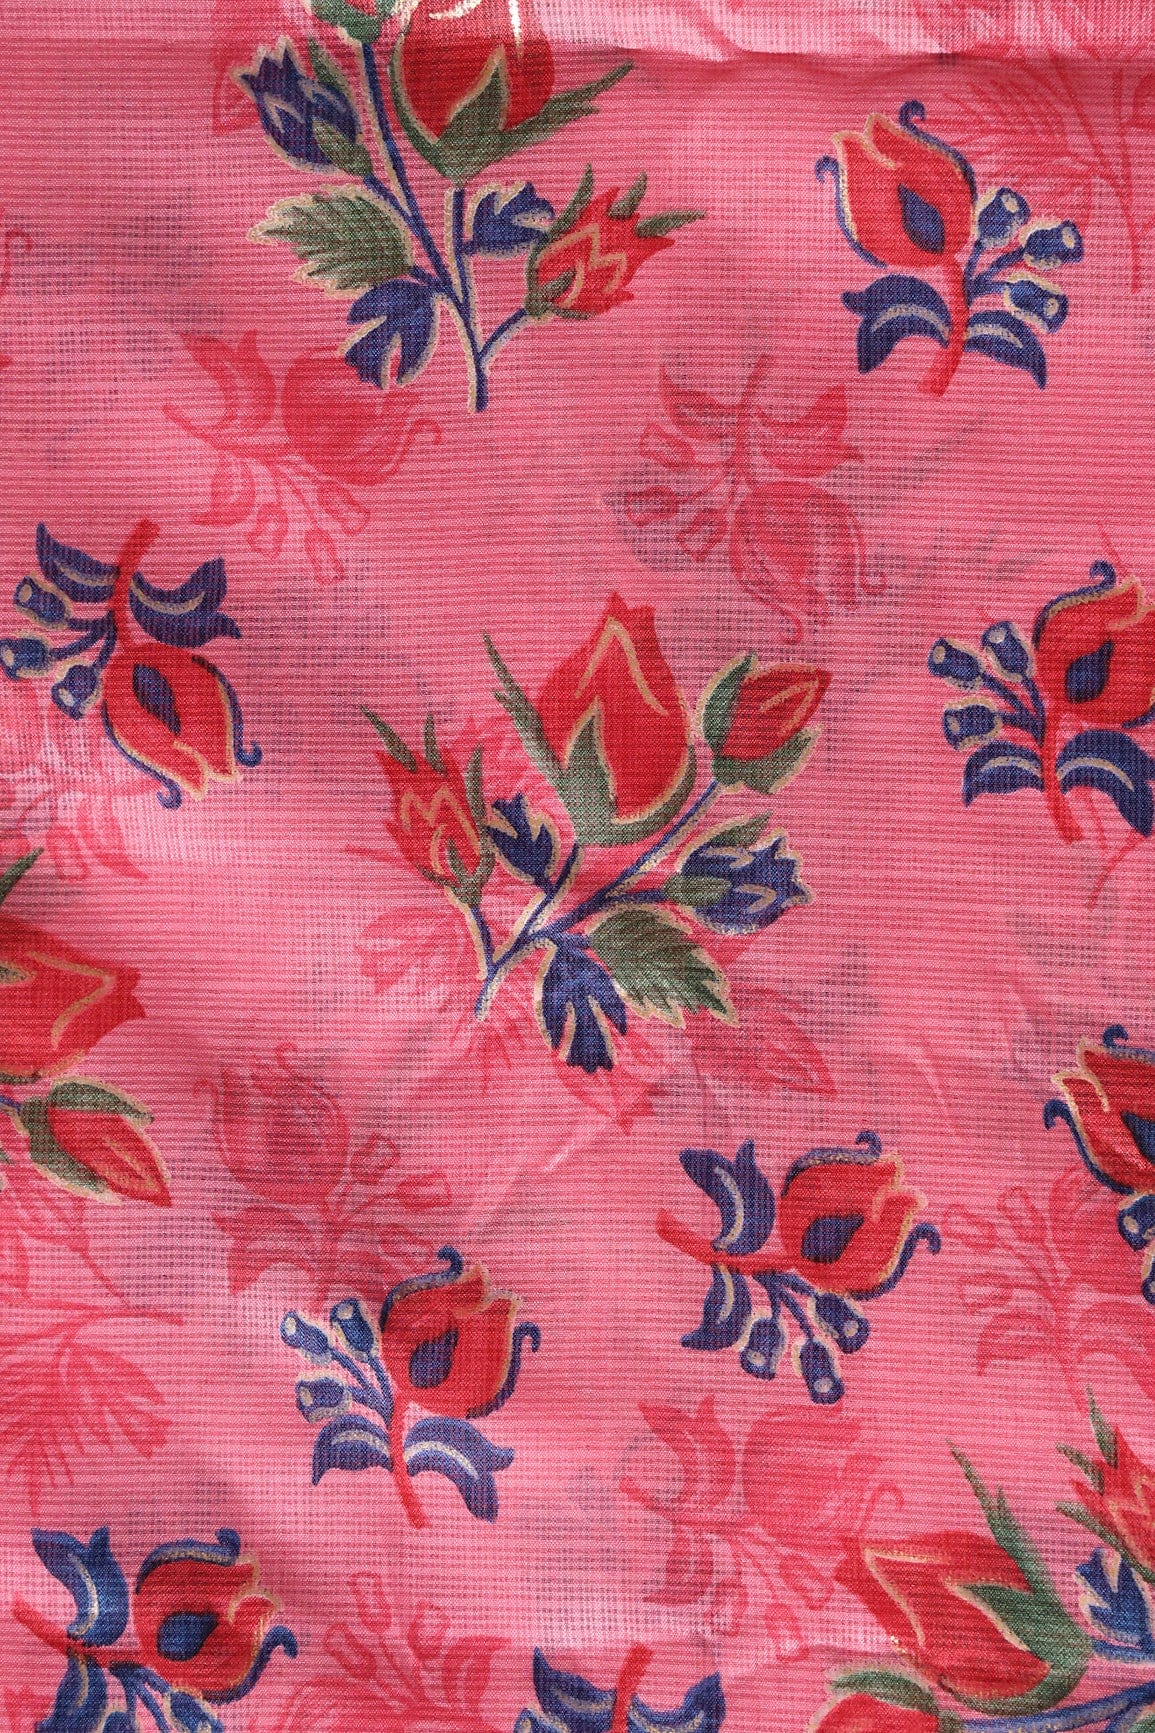 doeraa Prints Red And Green Floral Pattern Foil Print On Gajri Pink Kota Doria Fabric